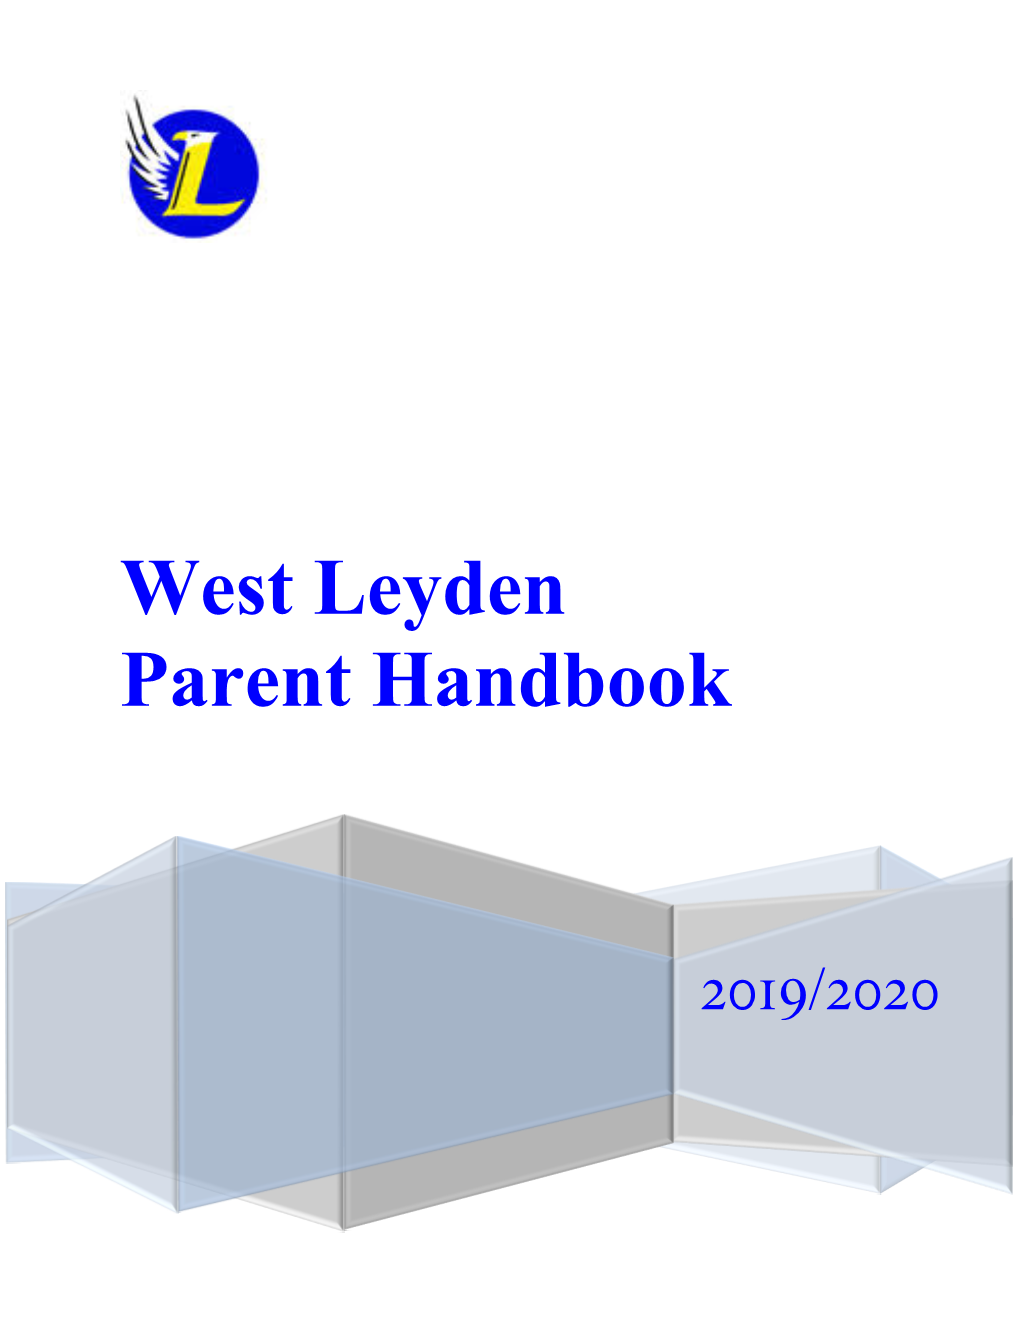 West Leyden Parent Handbook